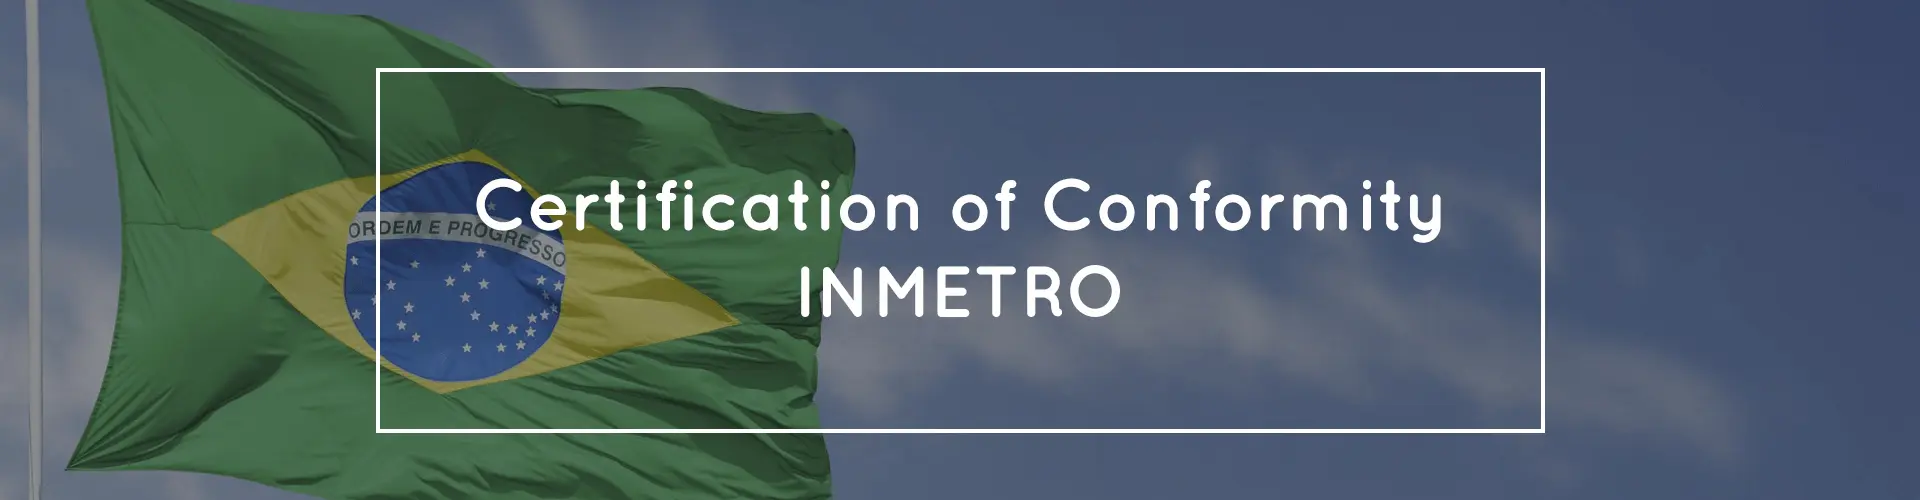 certification of conformity inmetro